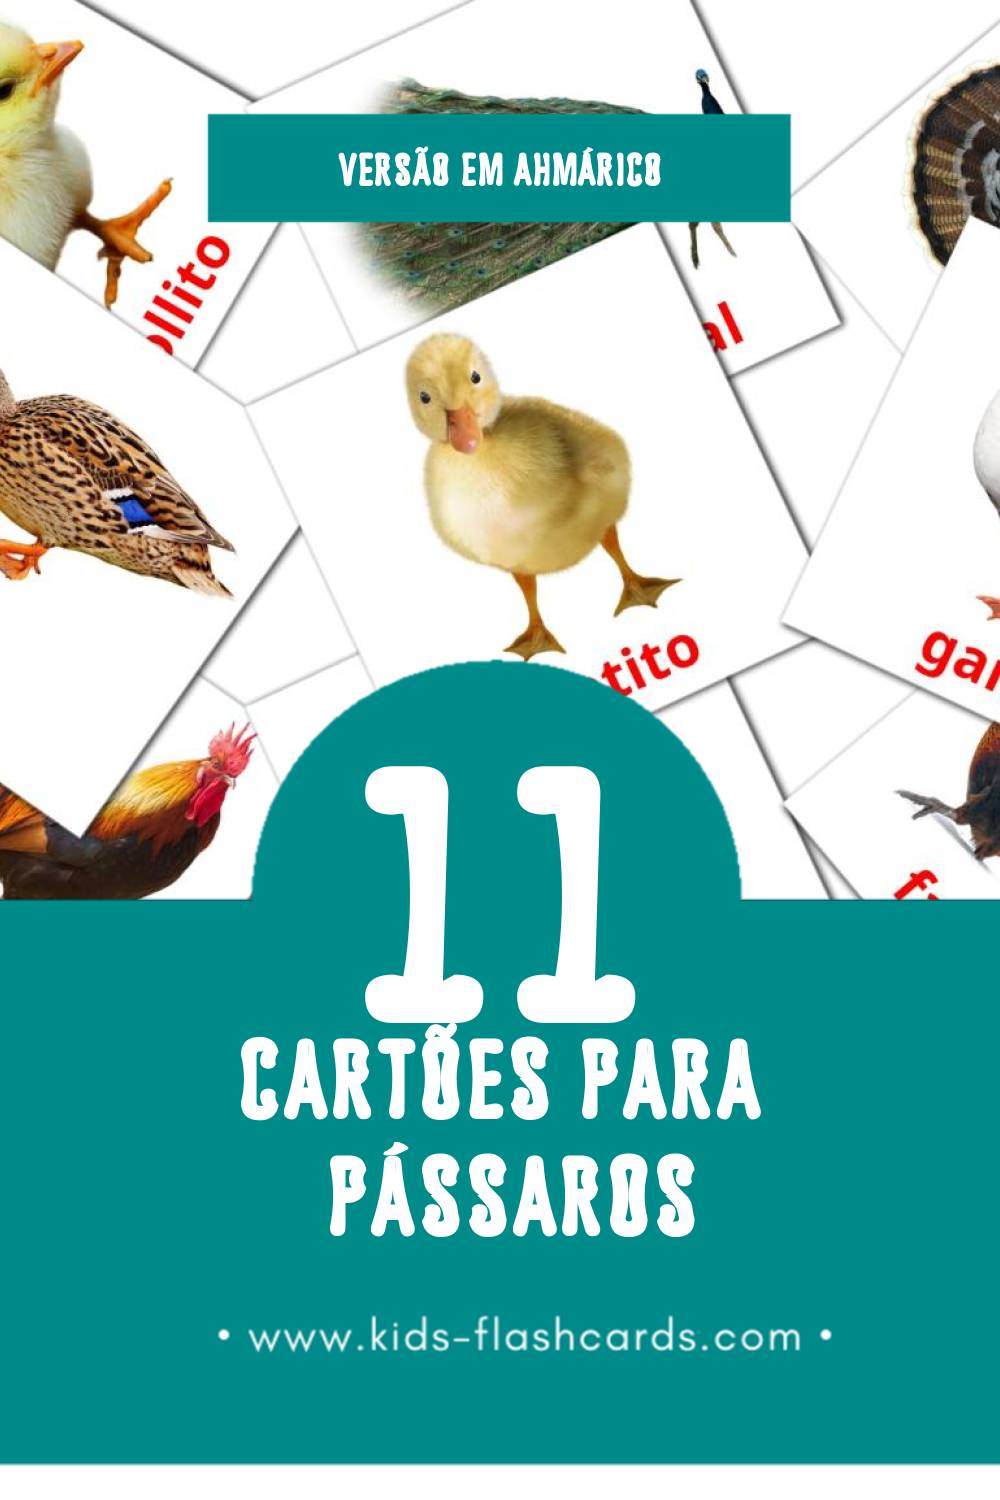 Flashcards de Aves da quinta Visuais para Toddlers (29 cartões em Ahmárico)